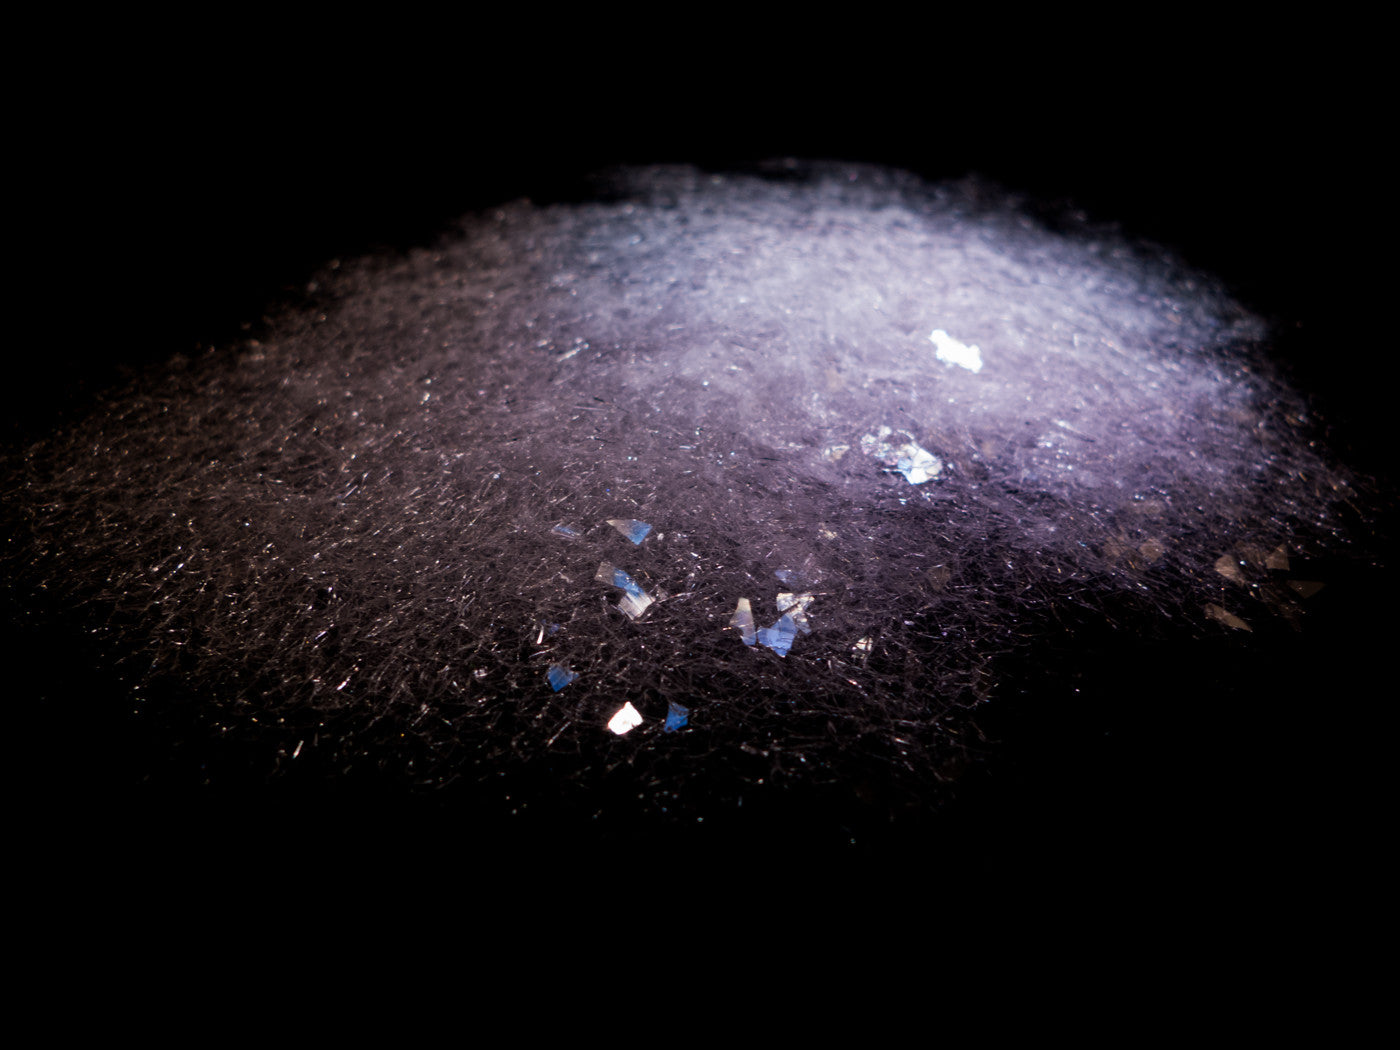 Diamond Dust – Glitter Makes It